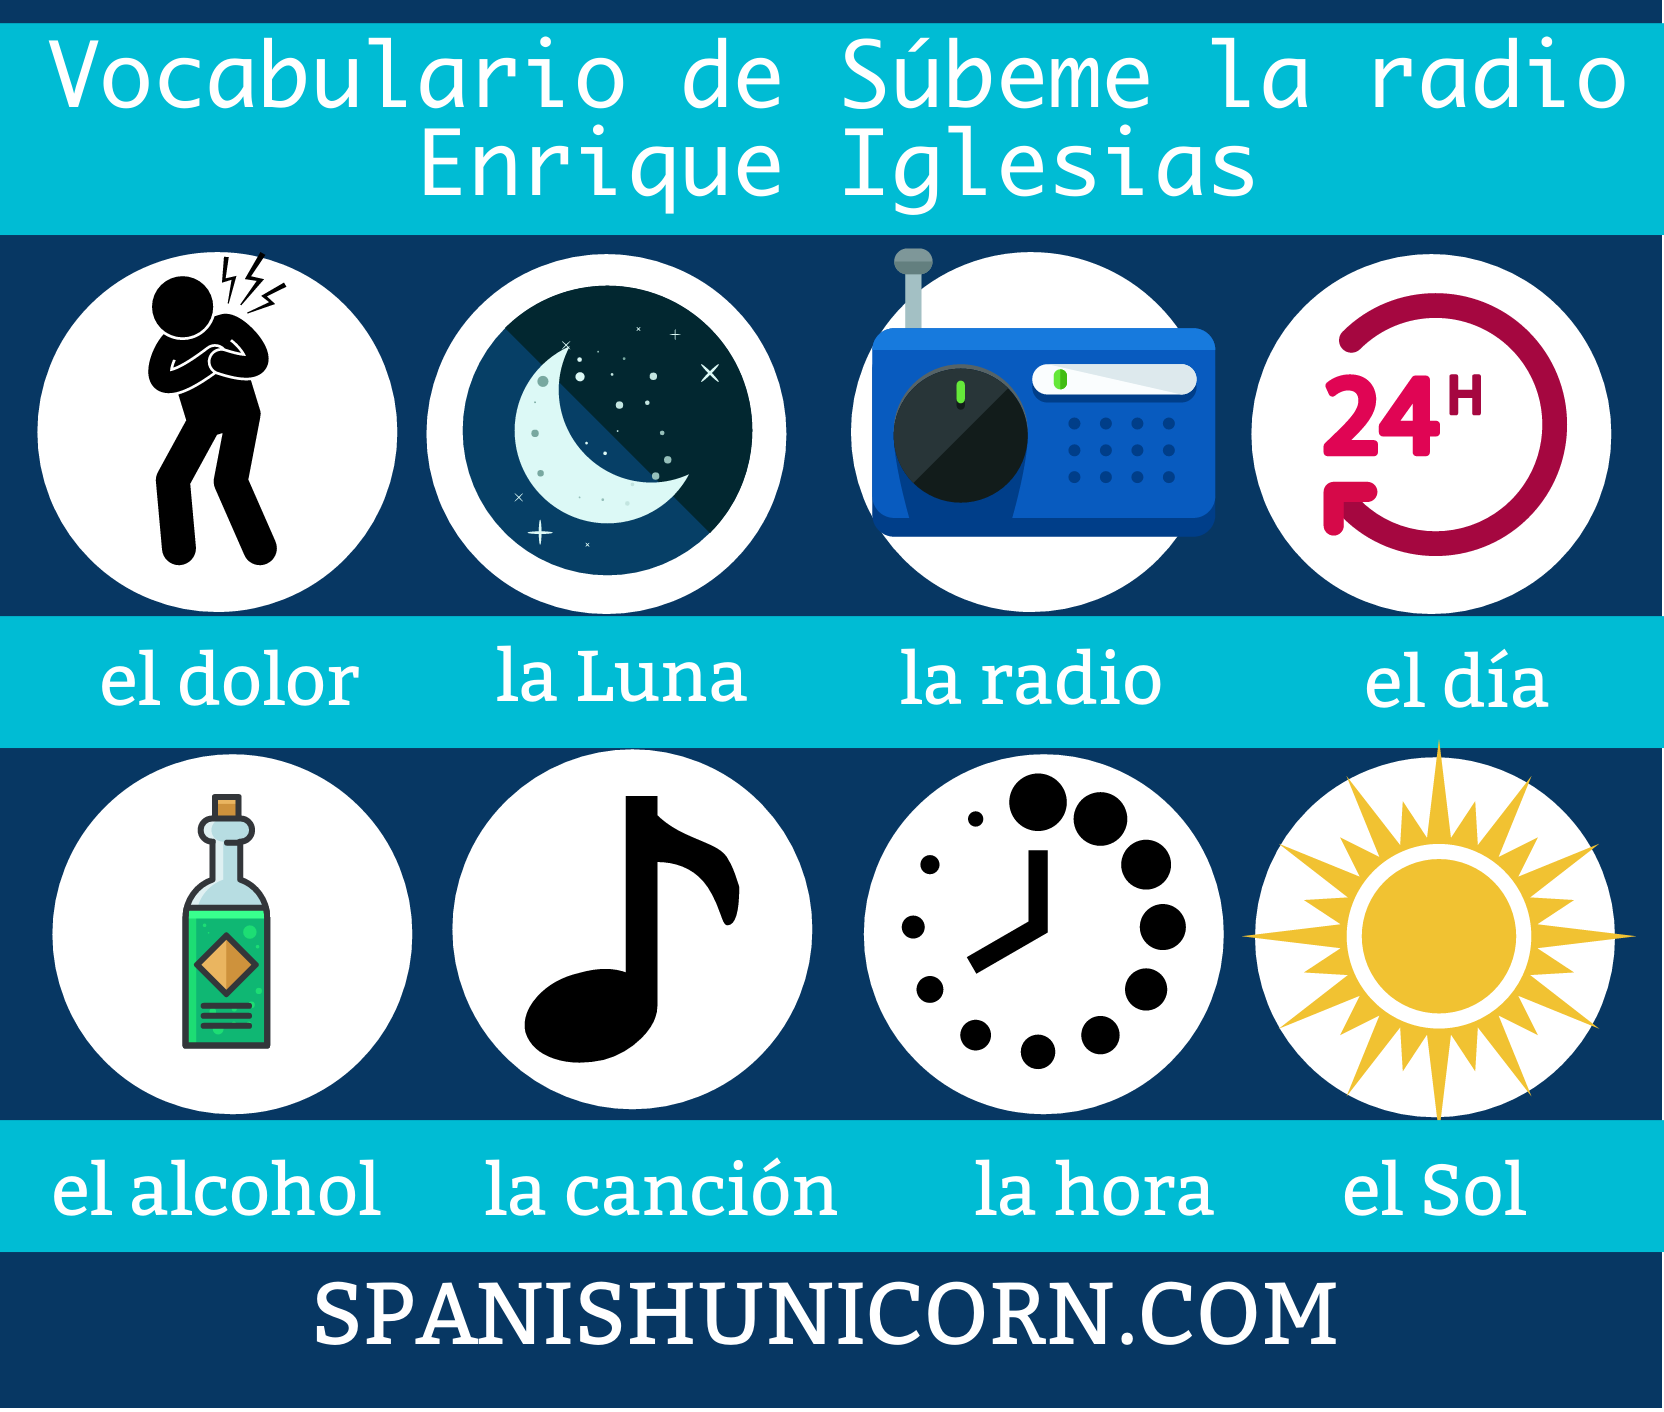 Vocabulario de súbeme la radio de Enrique Iglesias